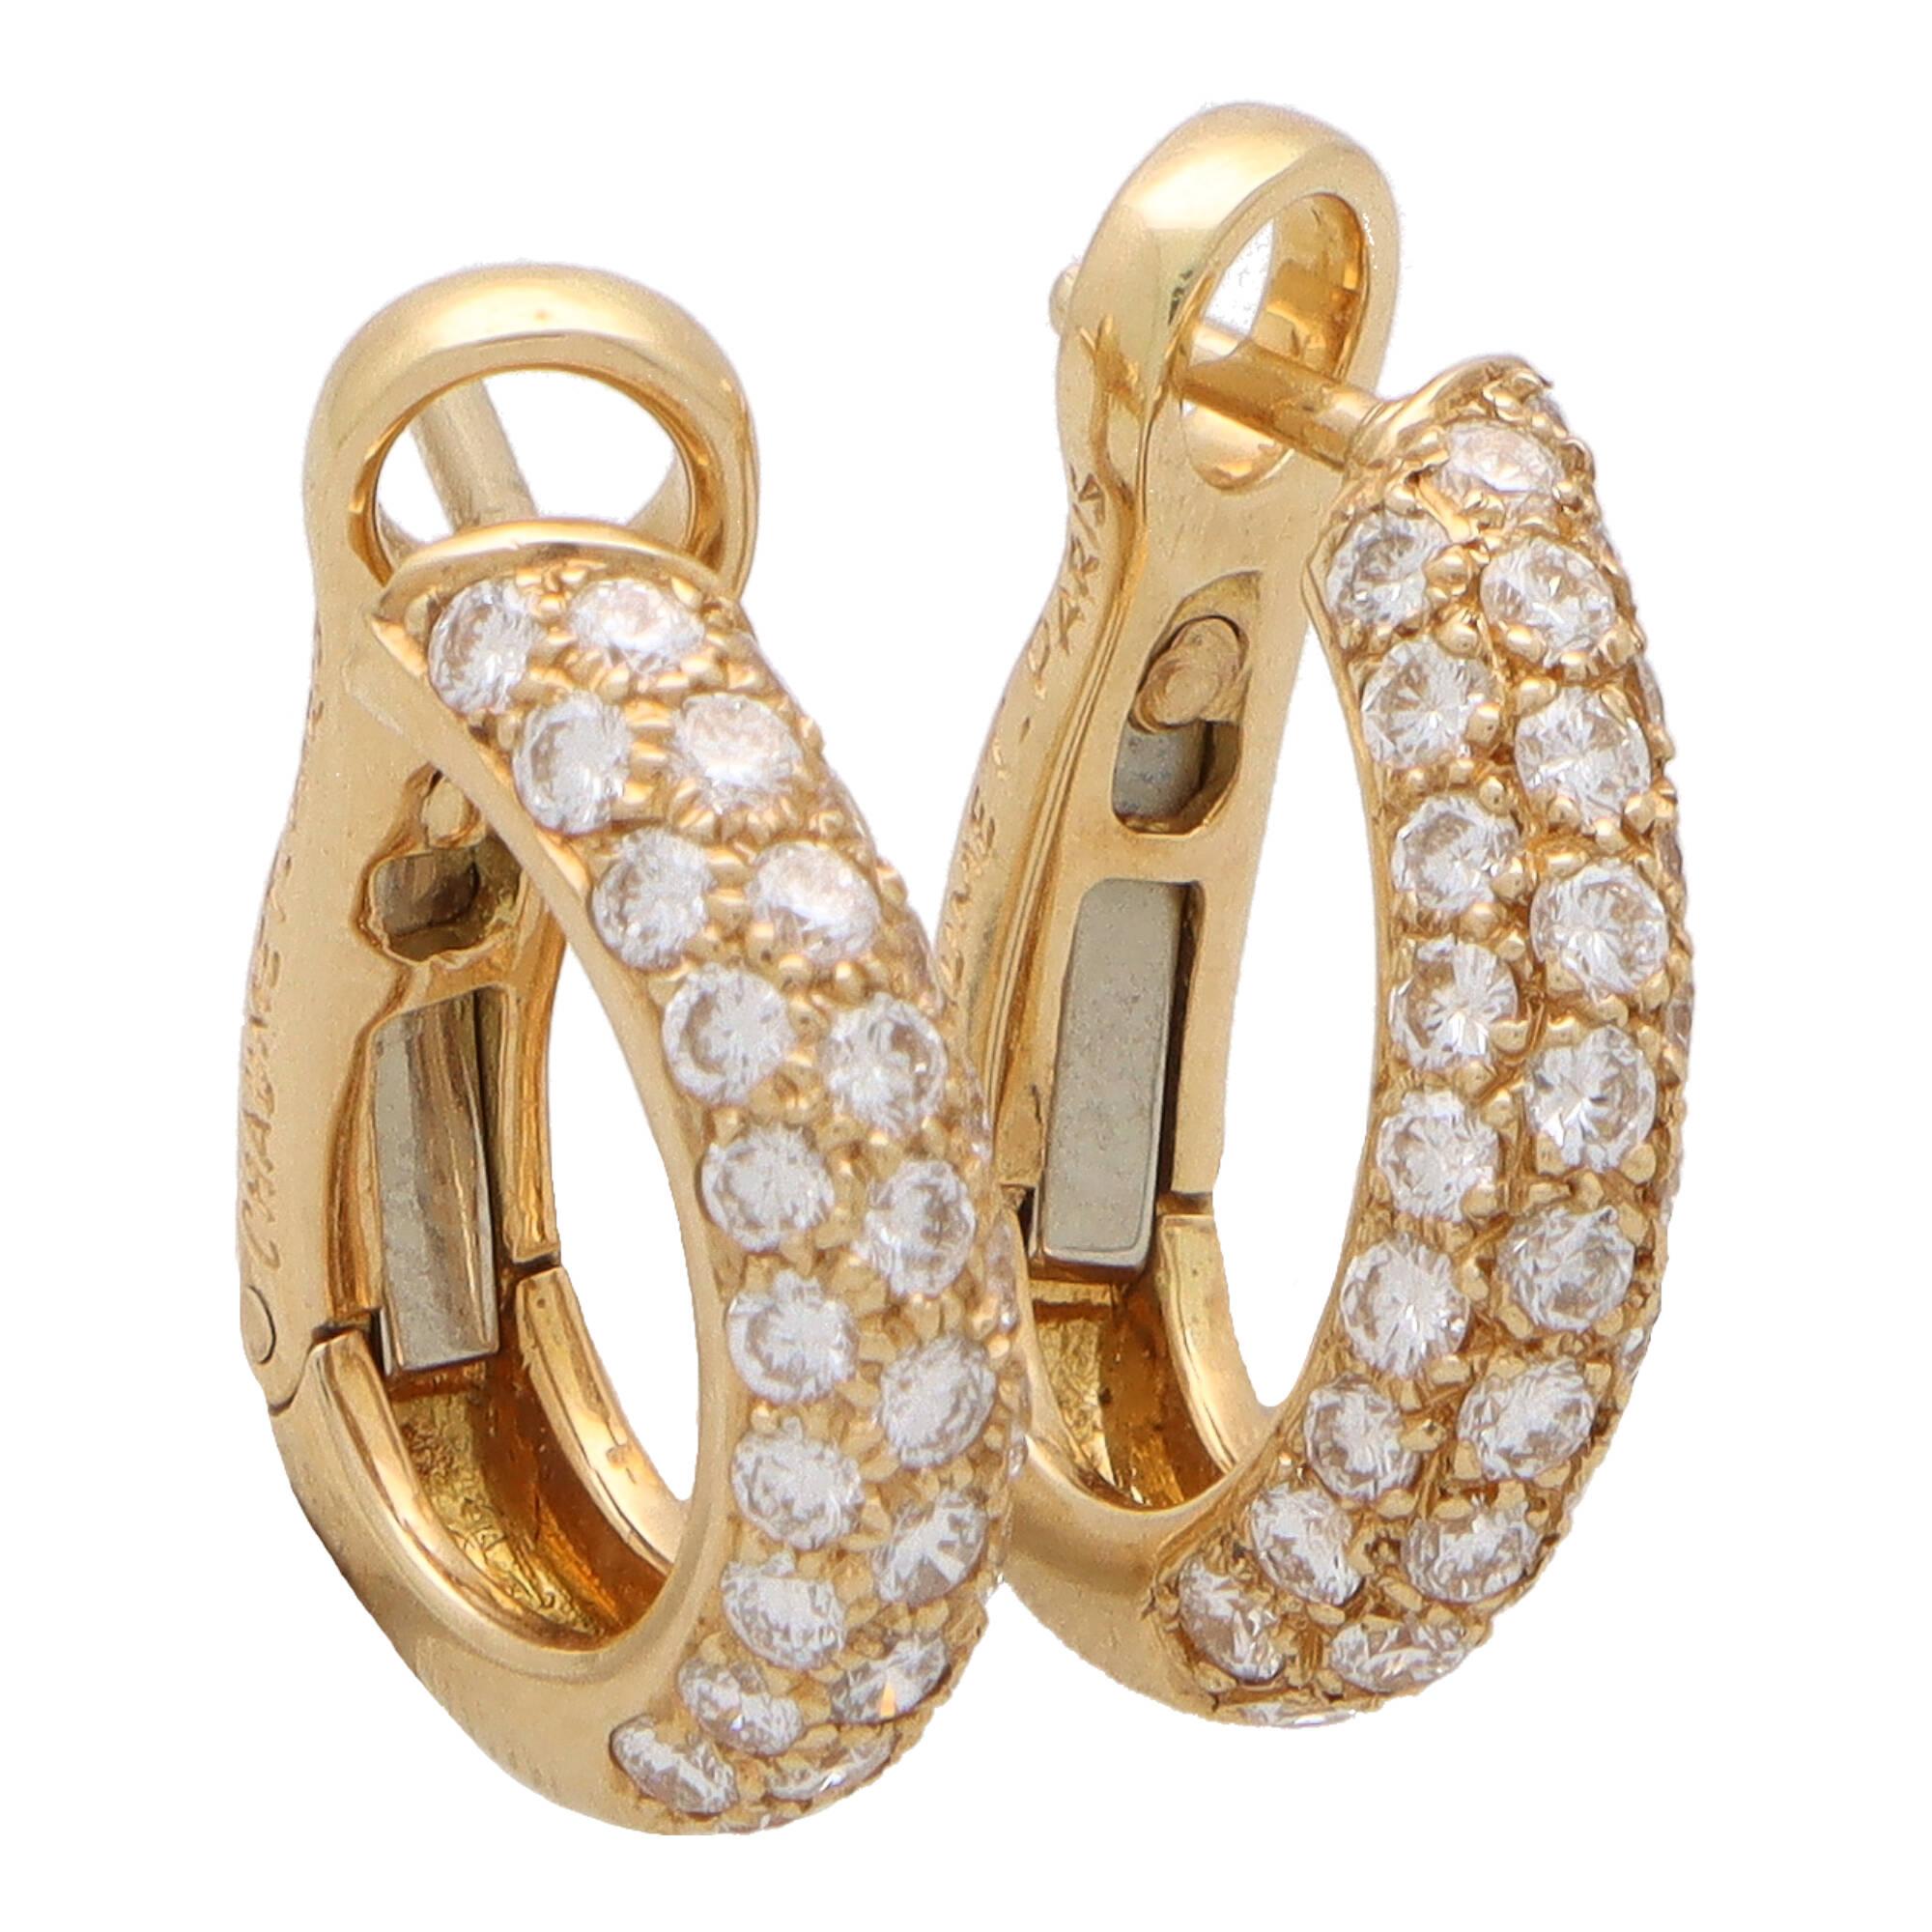 Modern Vintage Chaumet Petite Diamond Hoop Earrings in 18k Yellow Gold